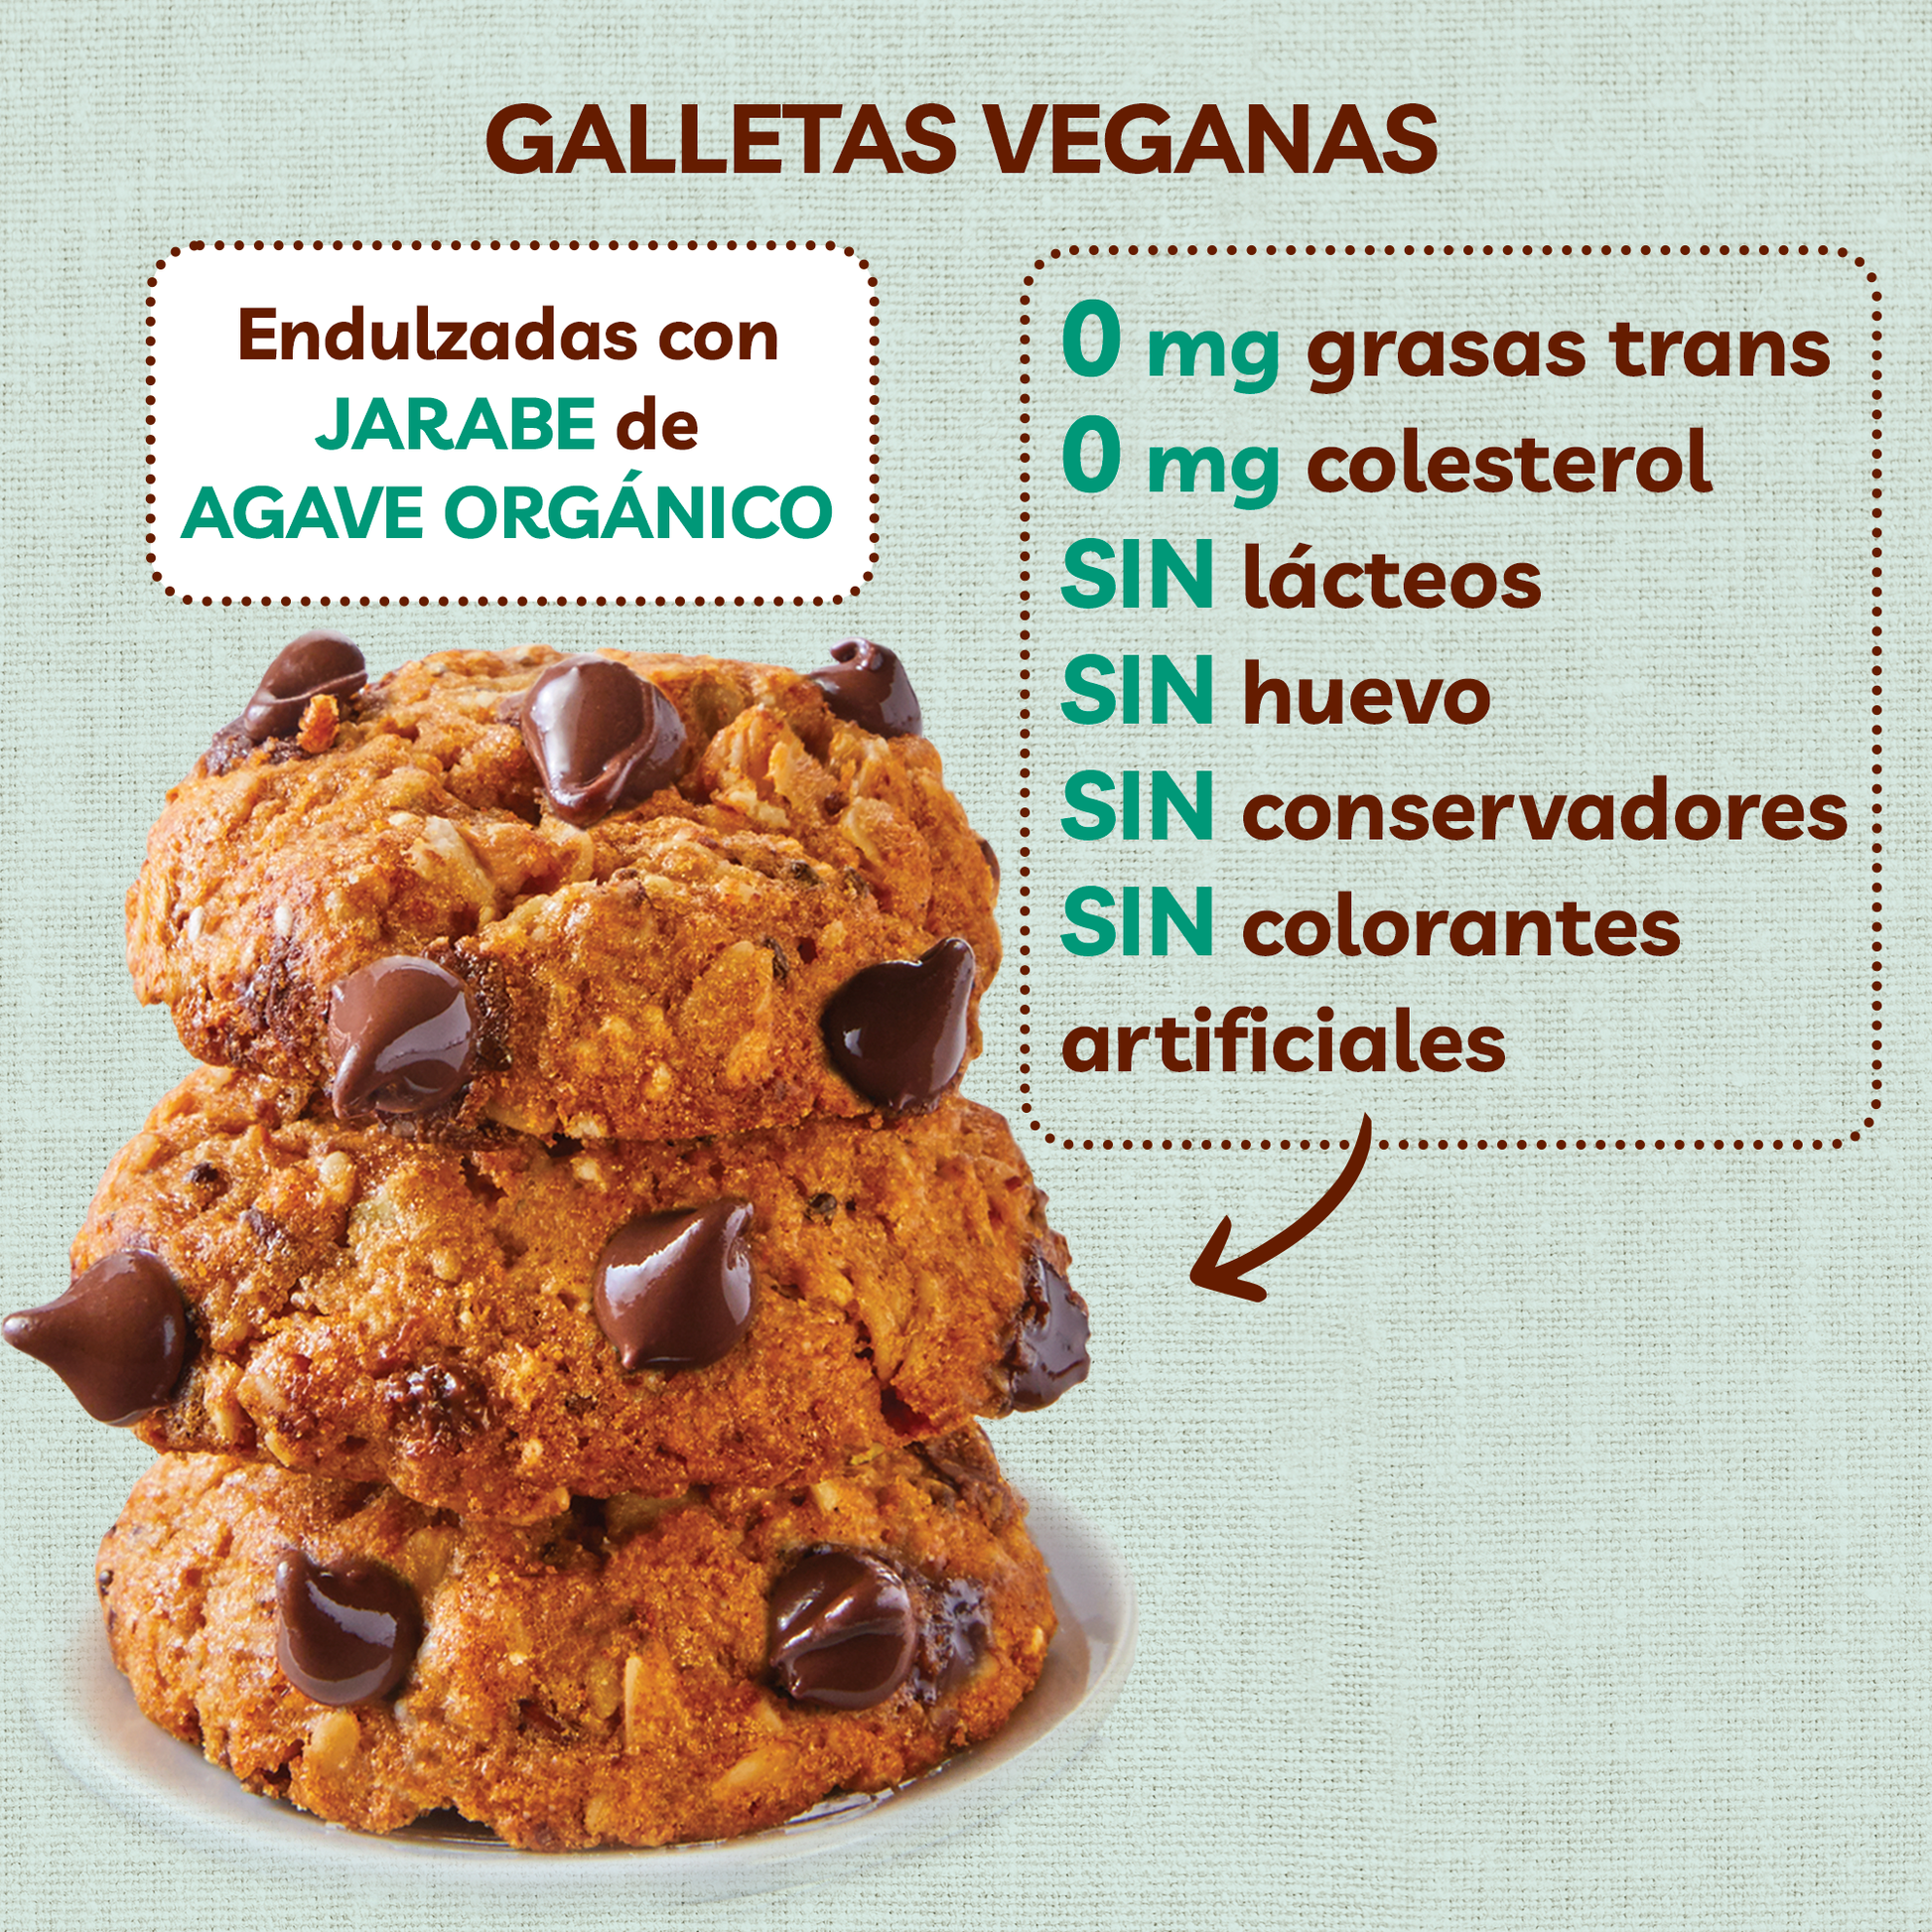 Galletas sin gluten con chispas de chocolate o cookies